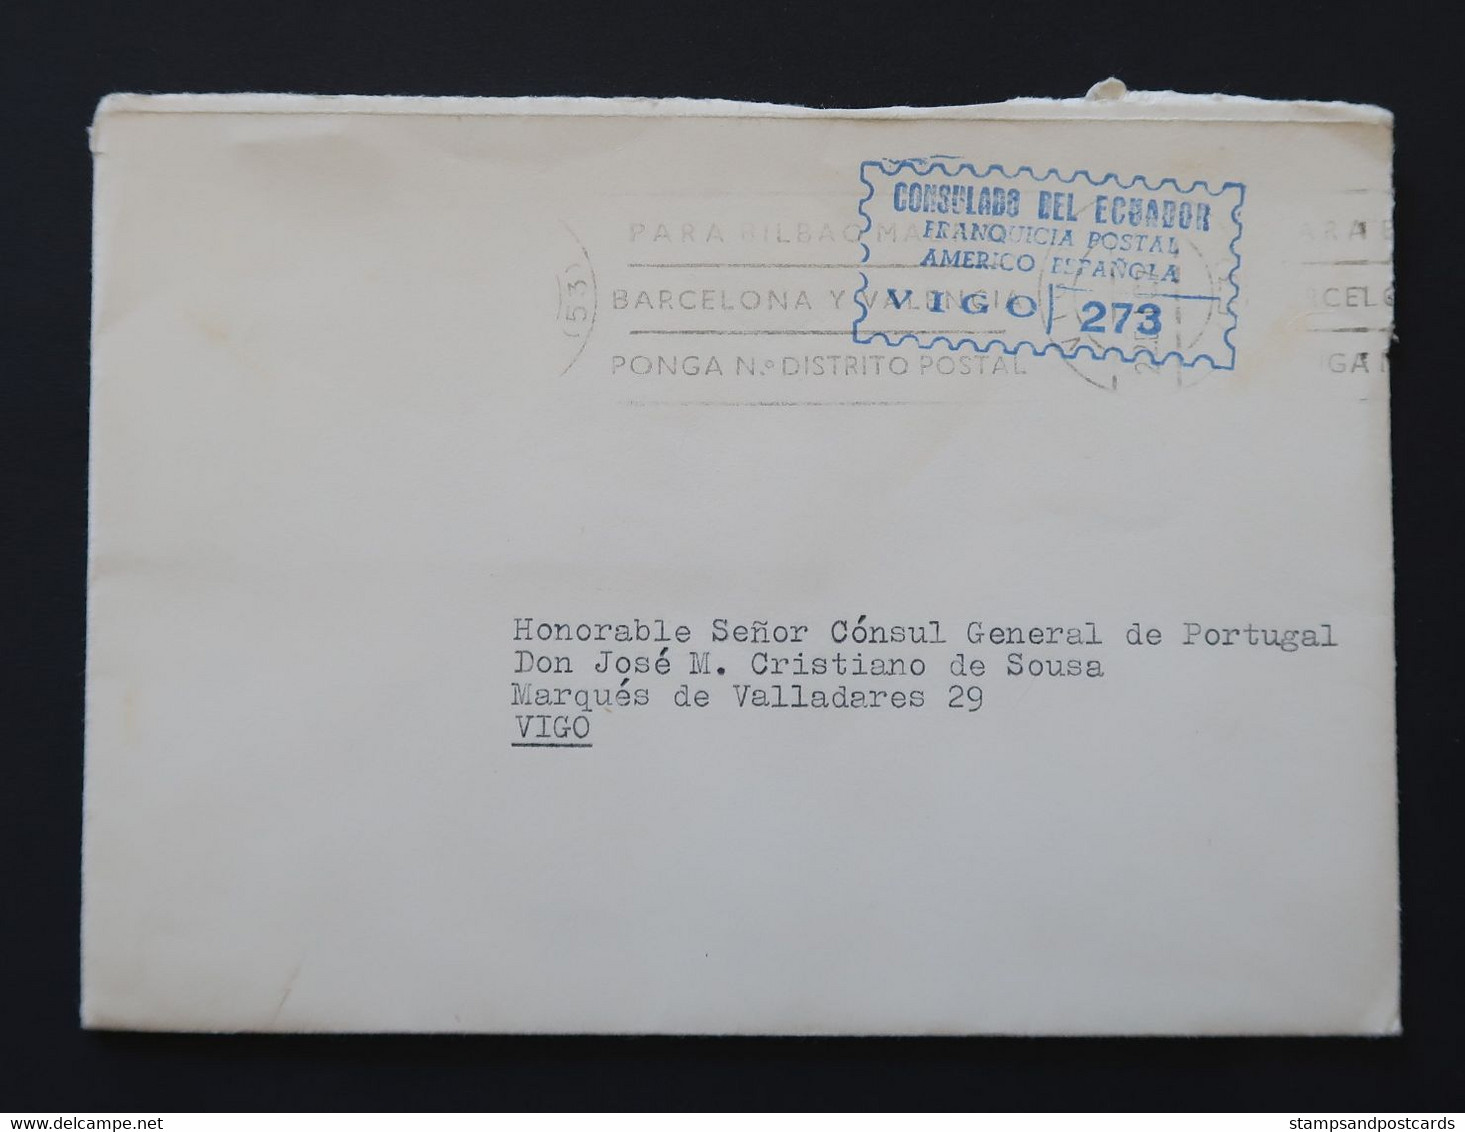 Espagne 1970 Lettre Franchise Postal Vigo Consulat Equateur España Franquicia Consulado Ecuador Official Paid Spain - Franquicia Postal